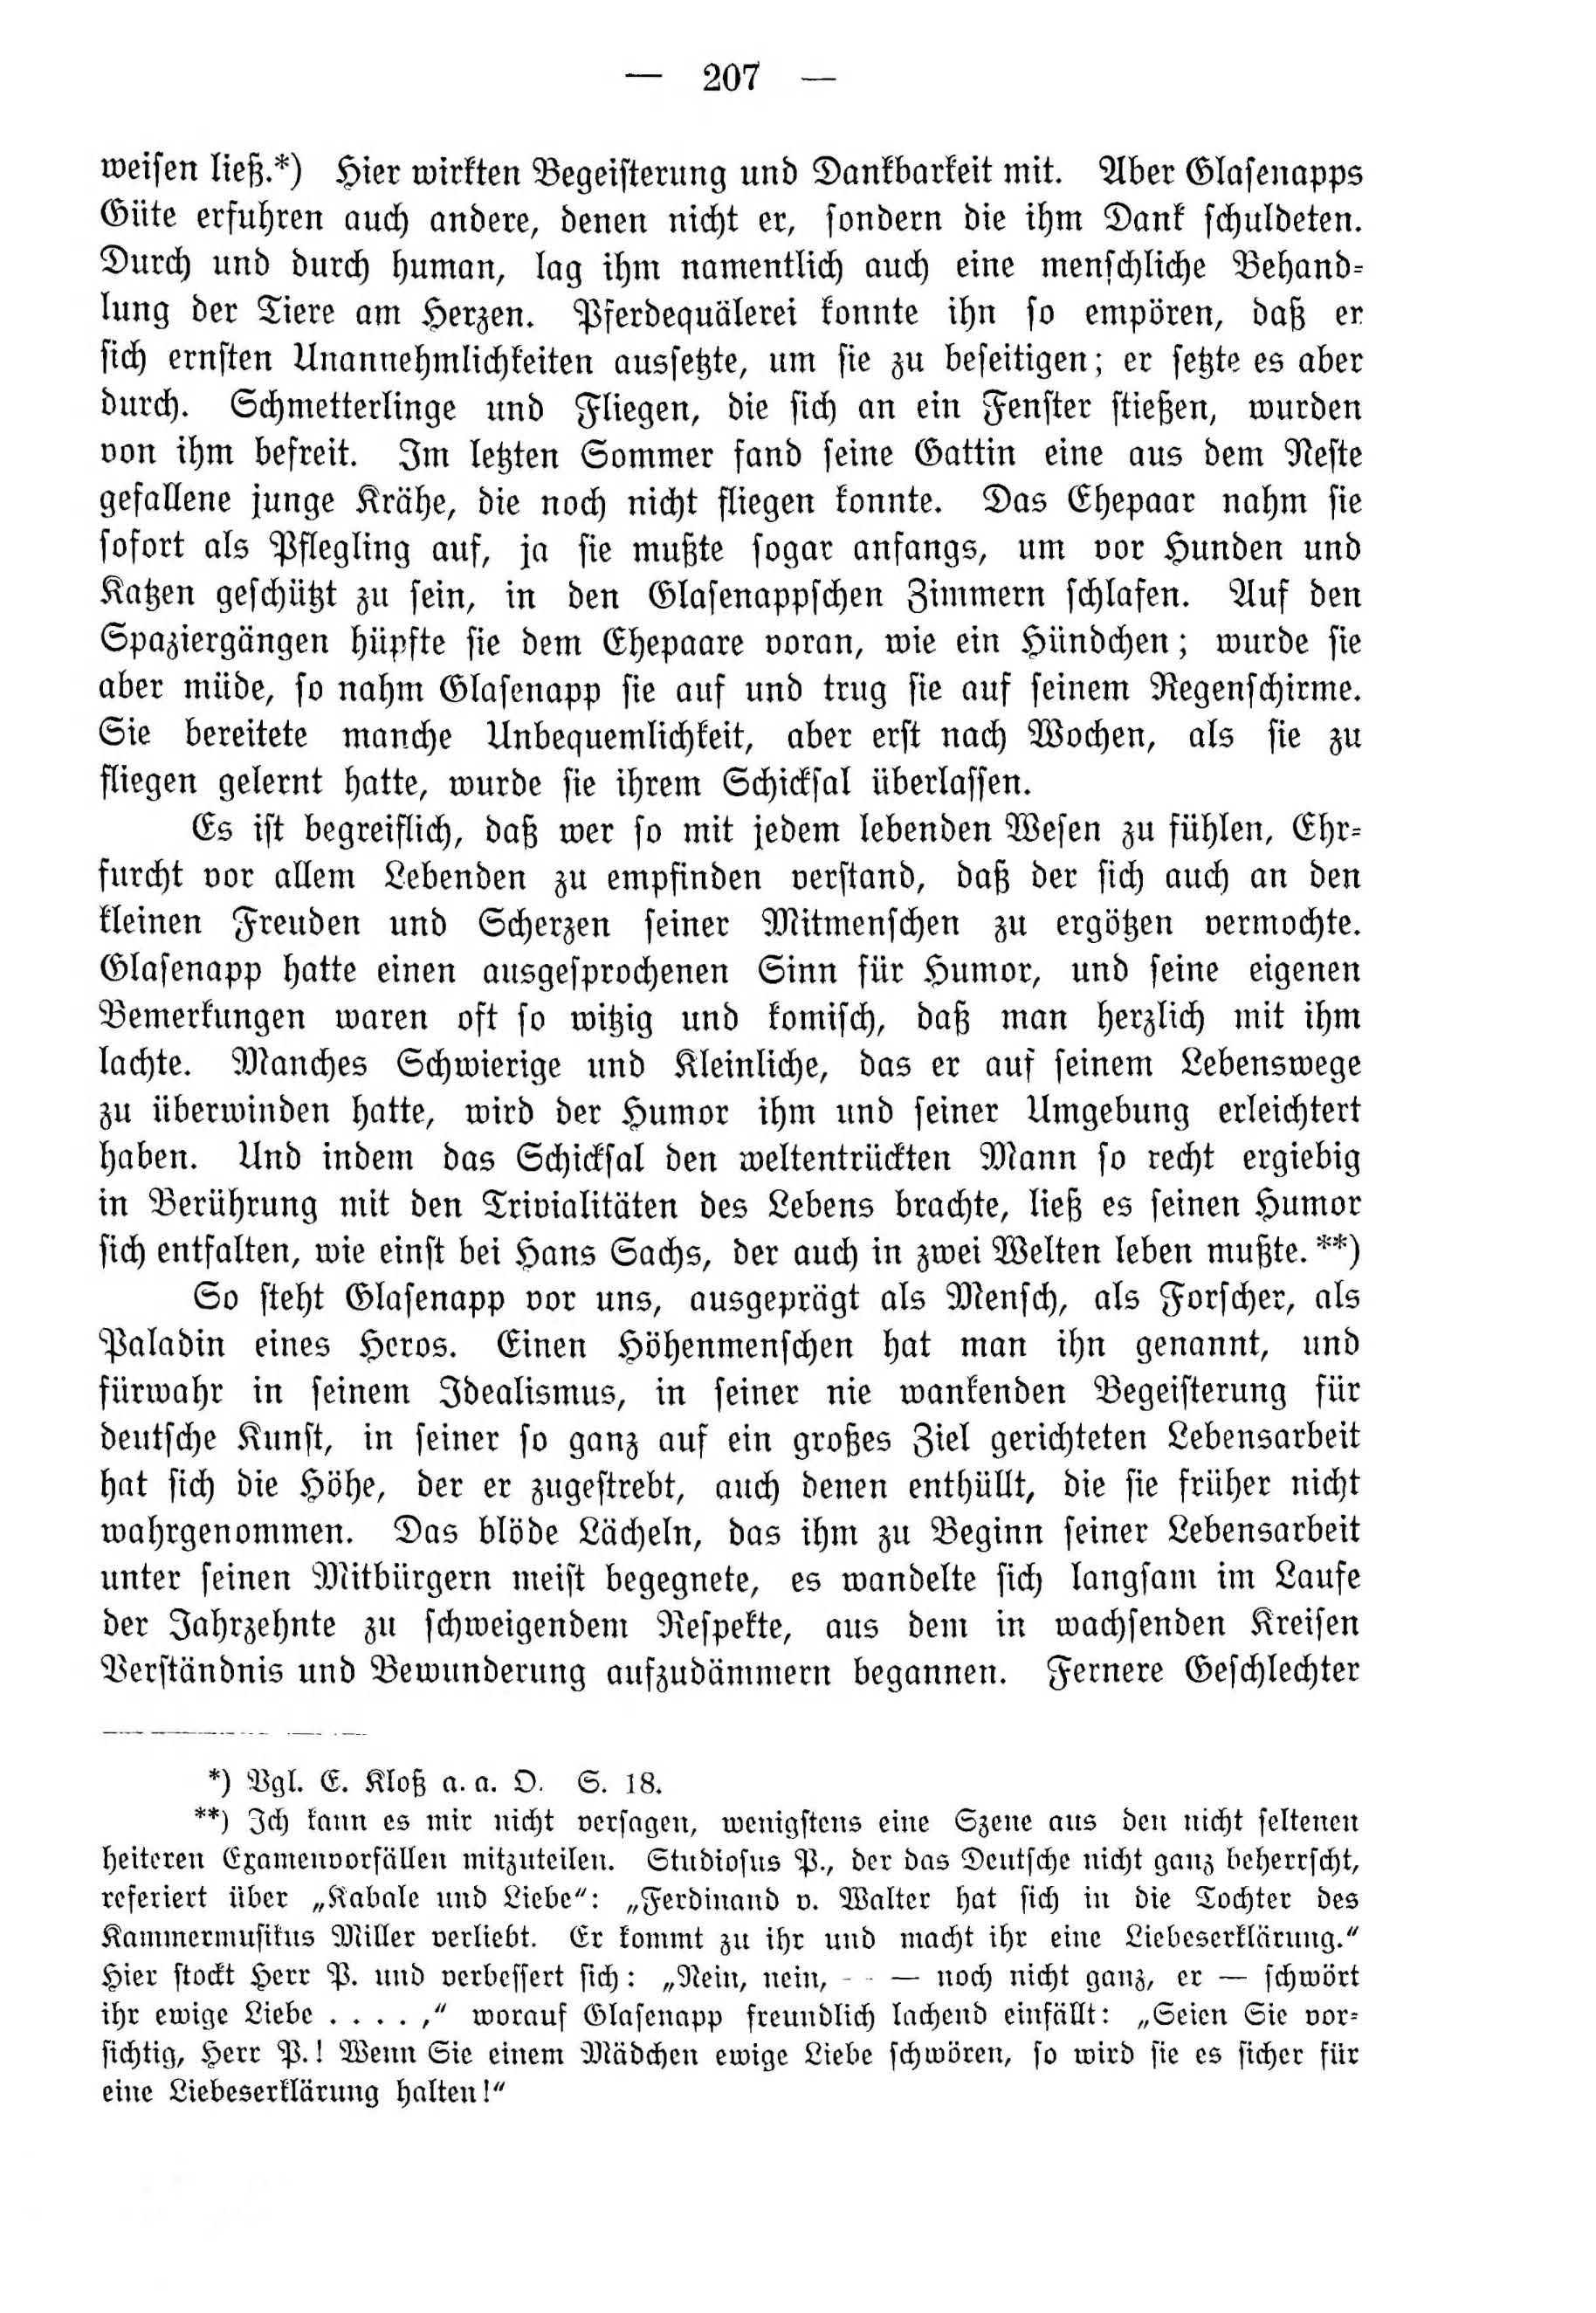 Deutsche Monatsschrift für Russland [4] (1915) | 207. (207) Main body of text